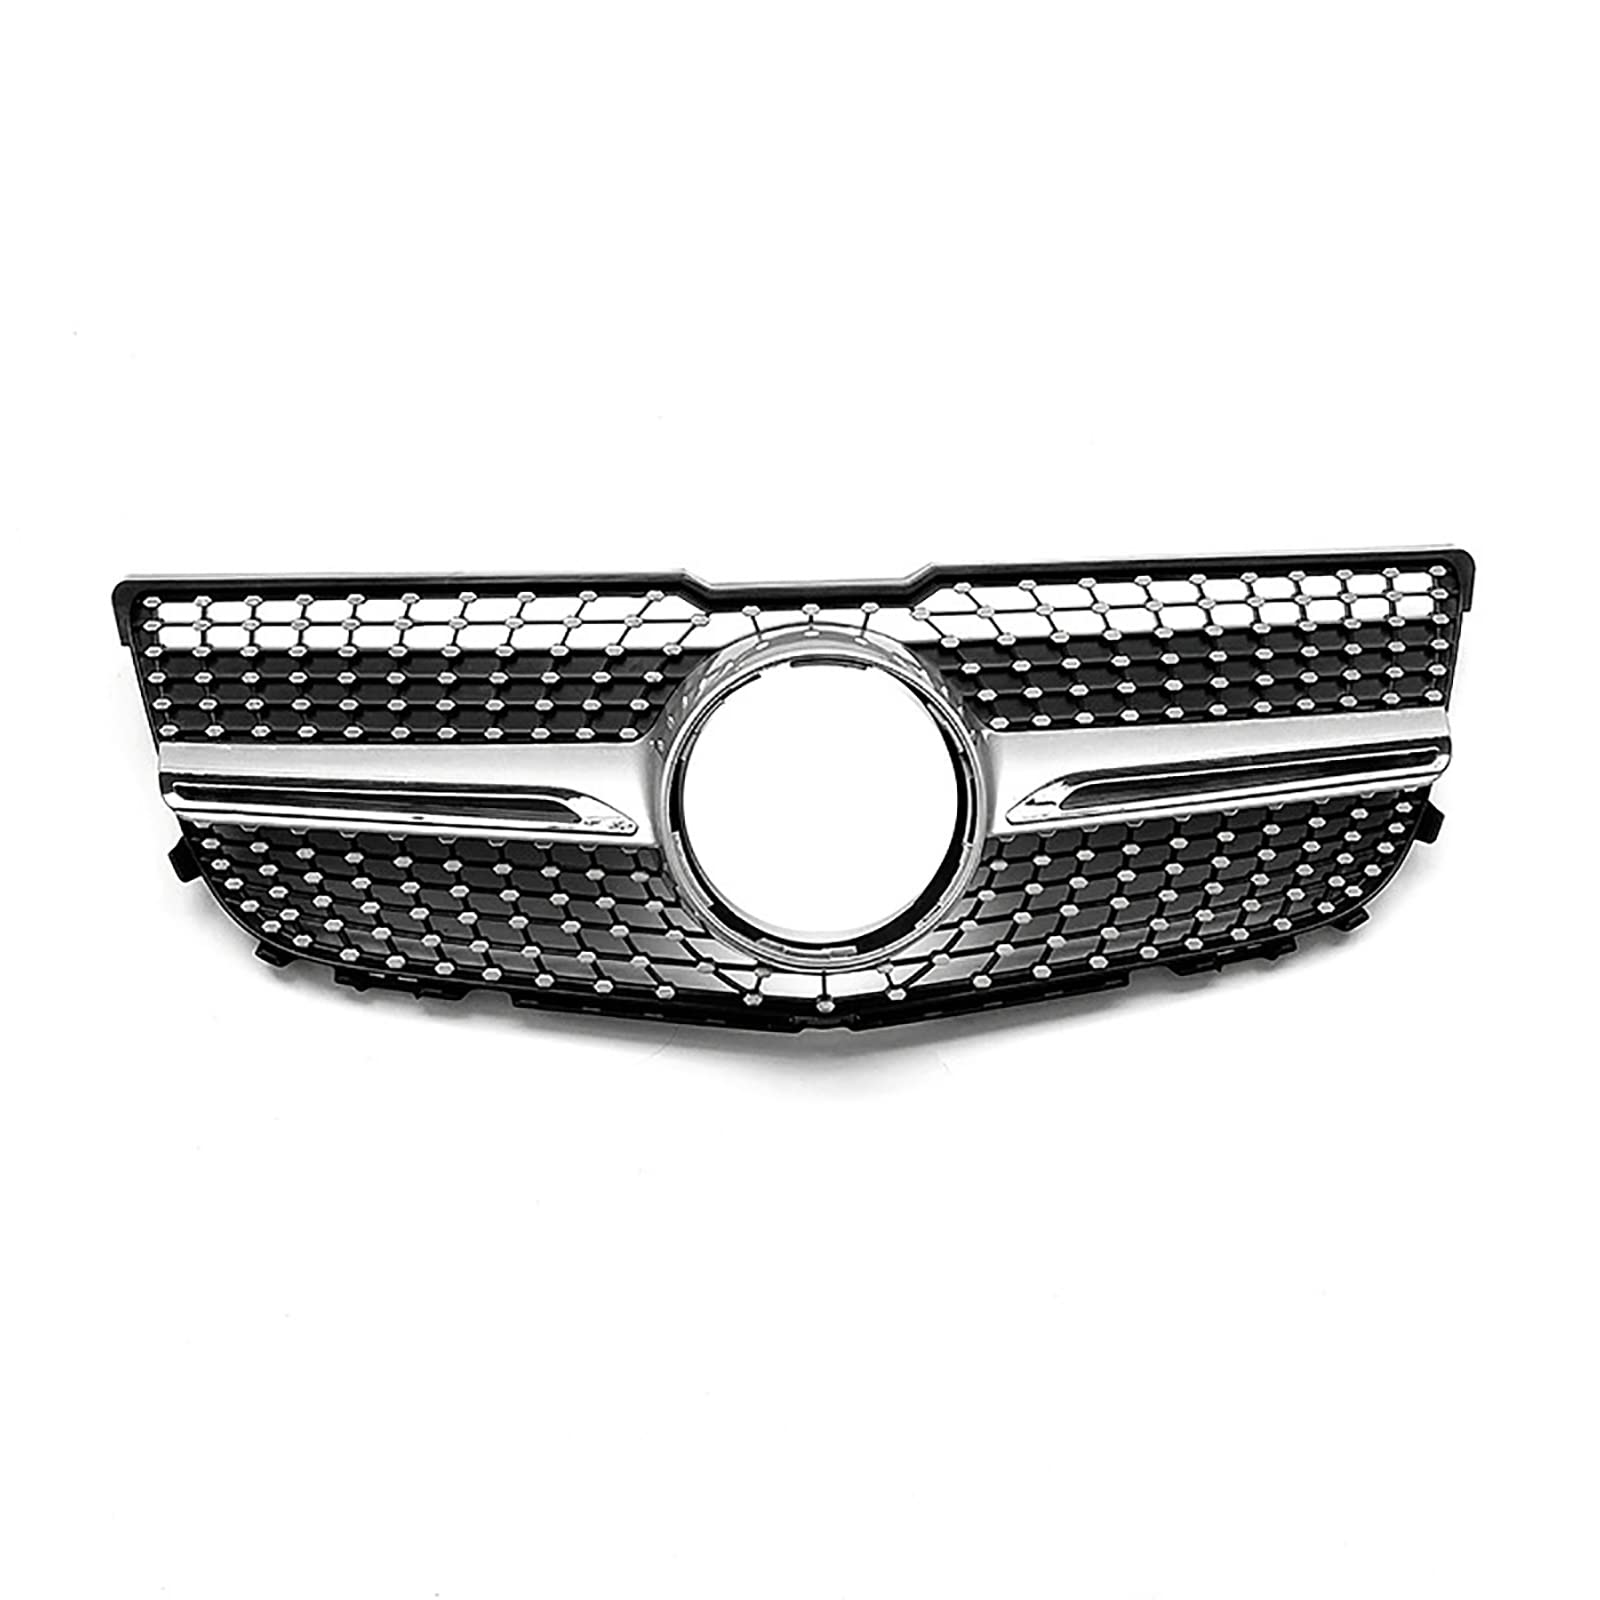 Kompatibel für Benz GLK X204 2013 2014 2015, Kühlergrill für die vordere Stoßstange des Autos, Schutzrahmen aus Renngitter, Diamant-Stil,1 silver von CHYPAAK